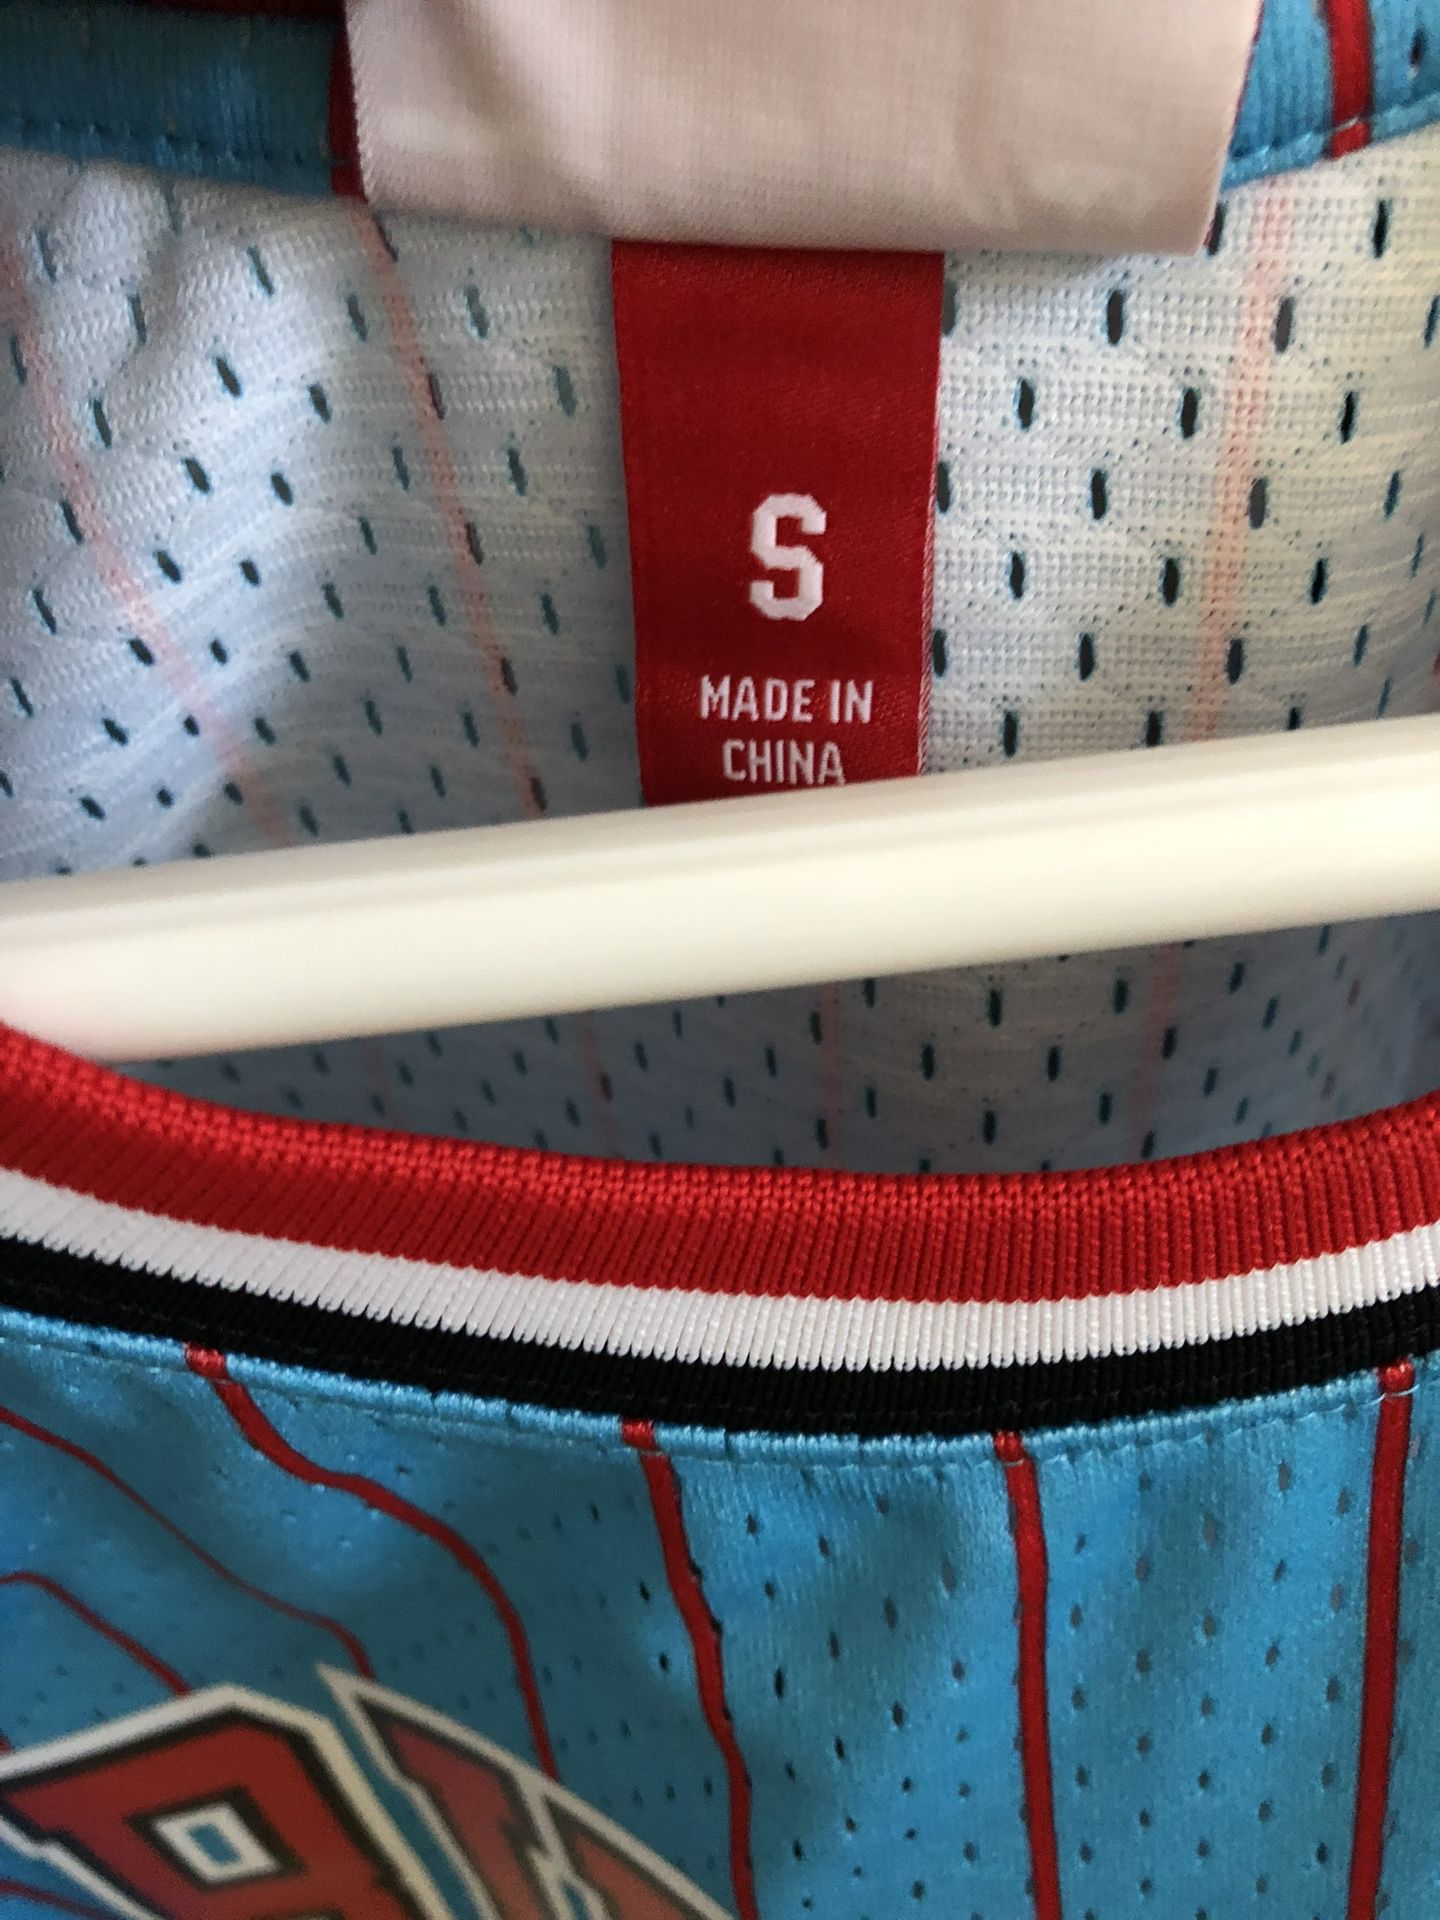 Scottie Pippen Reload Swingman Jersey for Sale in Las Vegas, NV - OfferUp